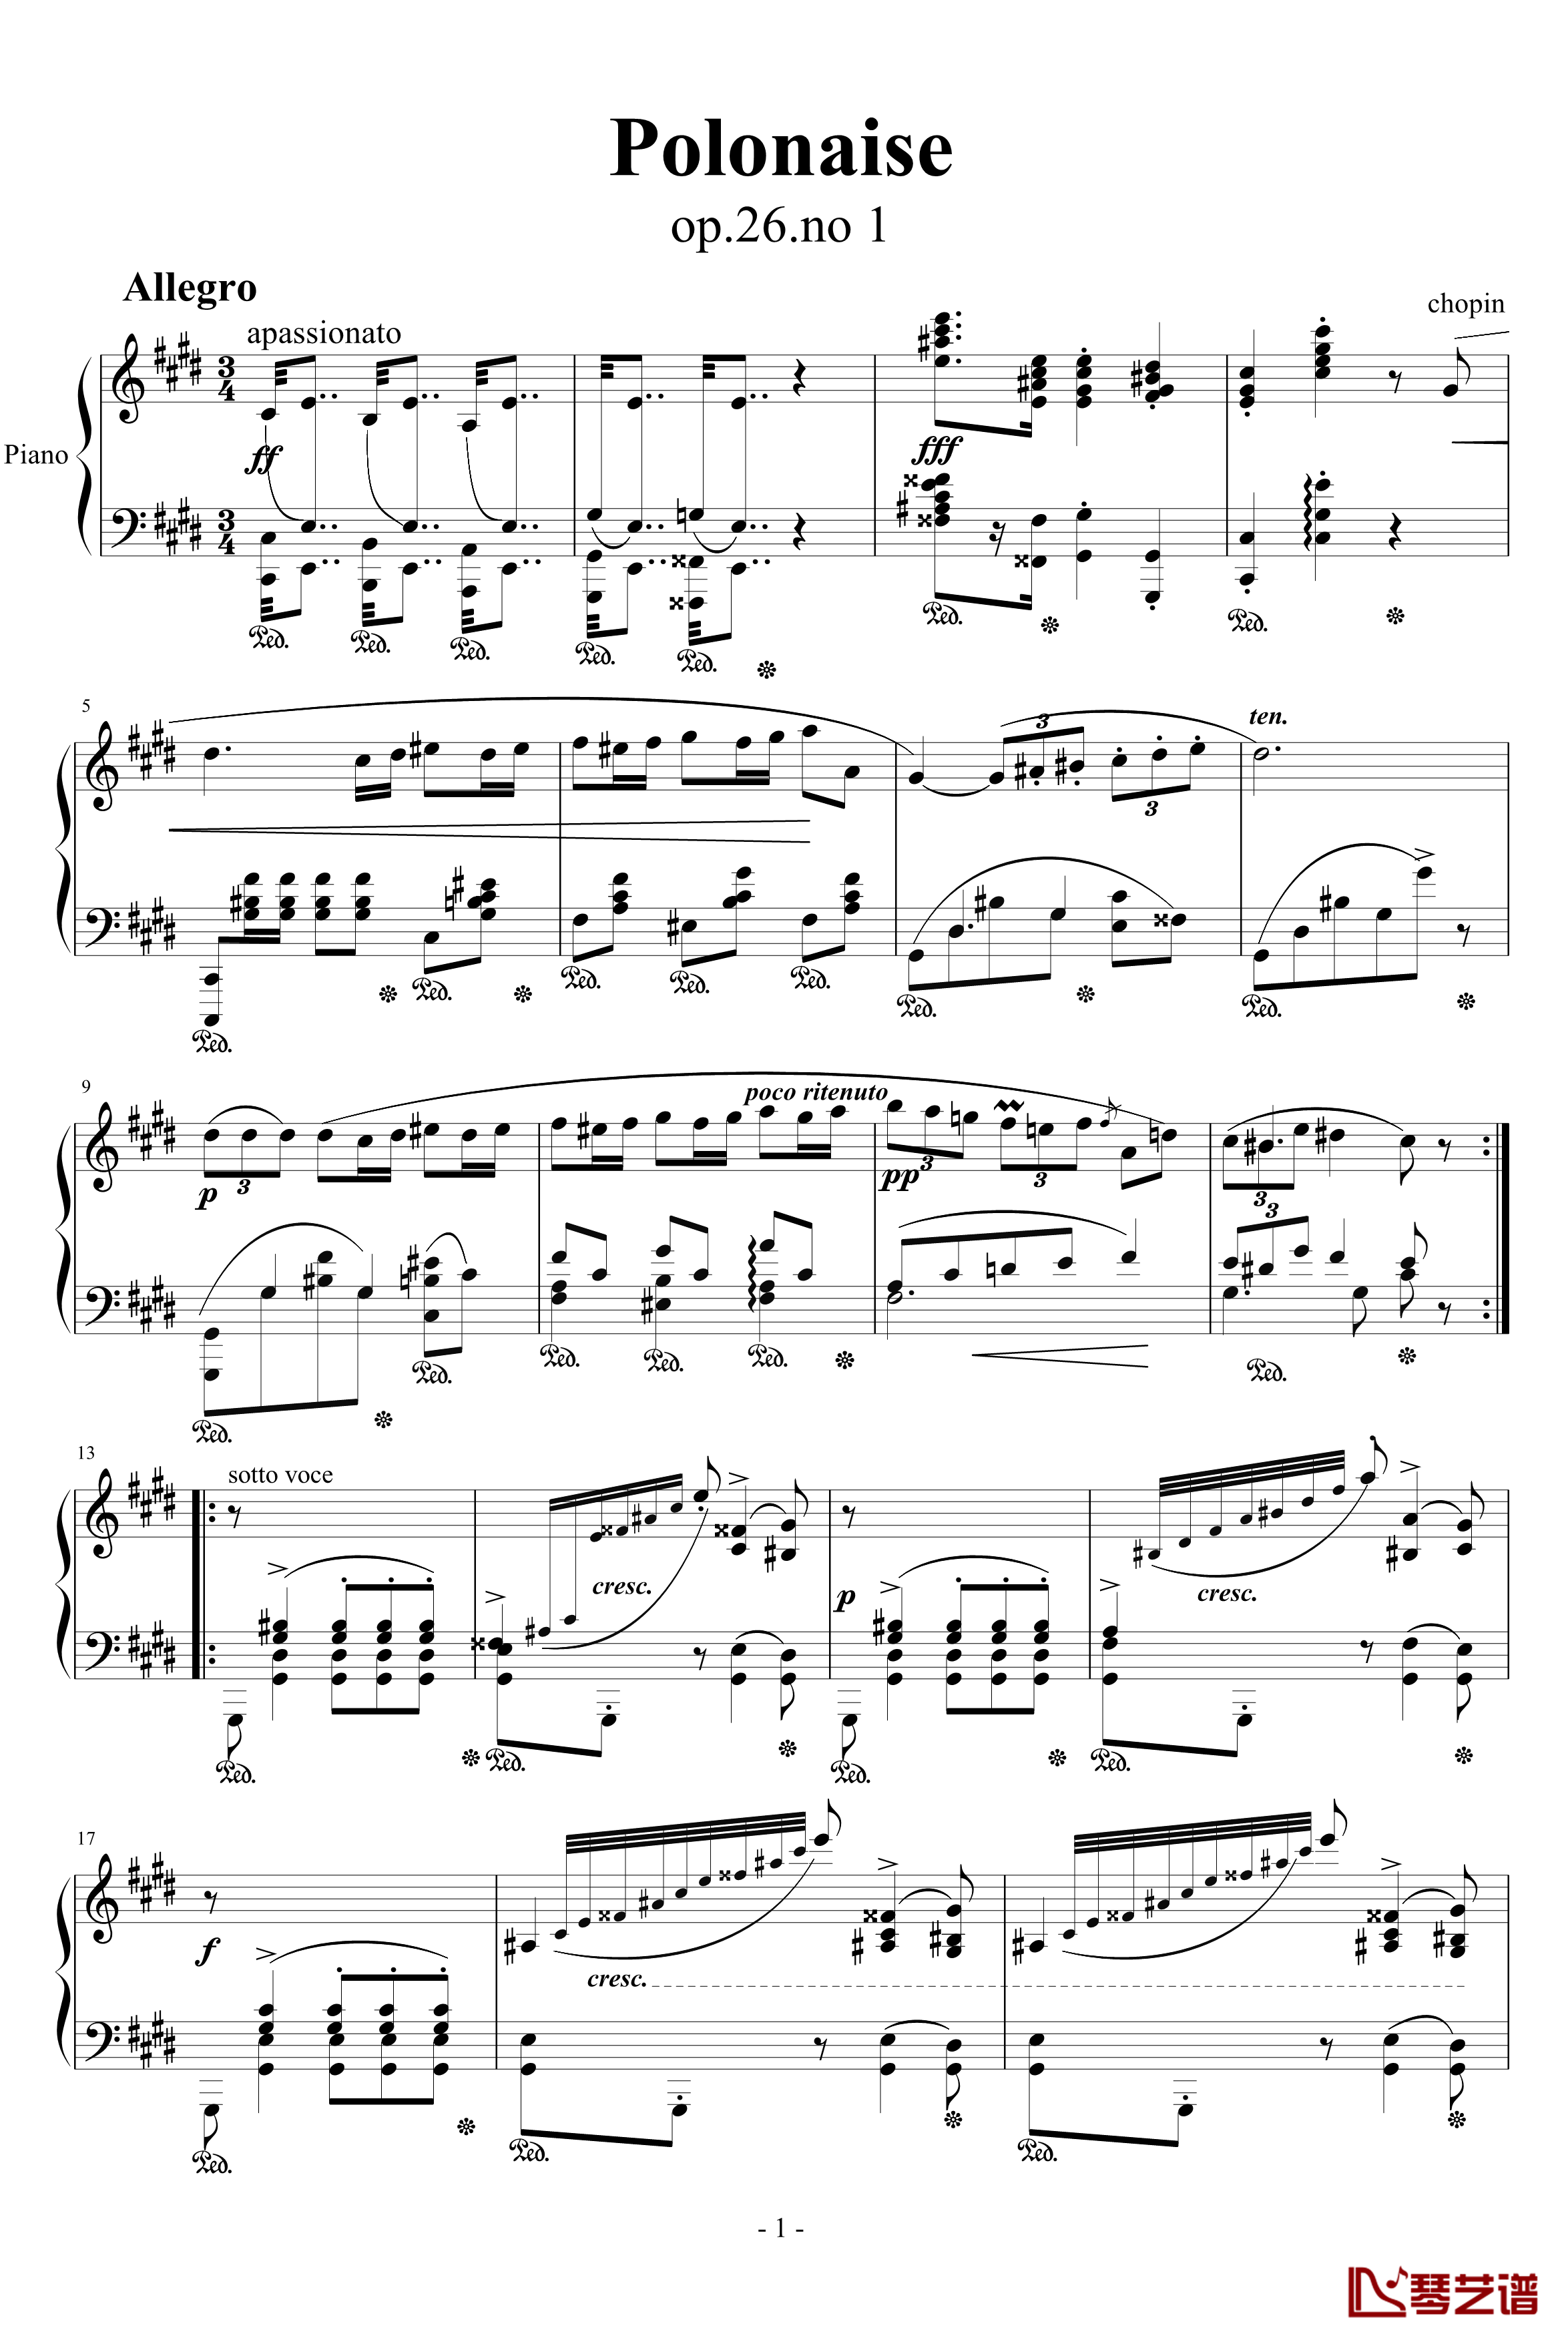 升c小调波罗乃兹舞曲钢琴谱-肖邦-chopin1